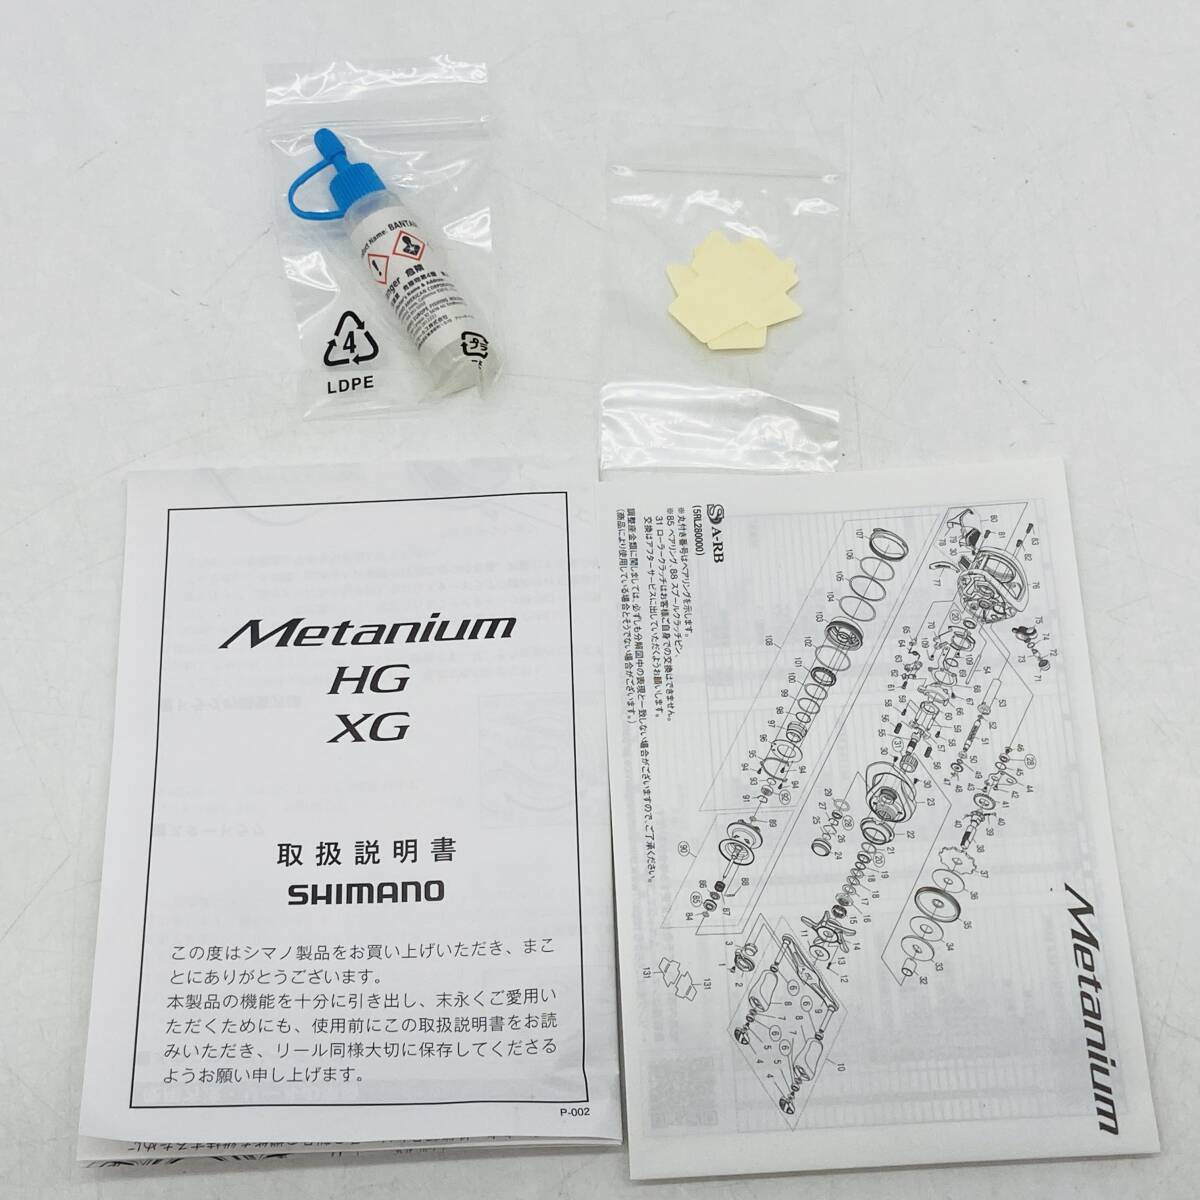 (26601)□【リール】SHIMANO(シマノ) 20 メタニウム HG 右ハンドル [RIGHT/Metanium HG/04114/5RL282000] 中古品の画像7